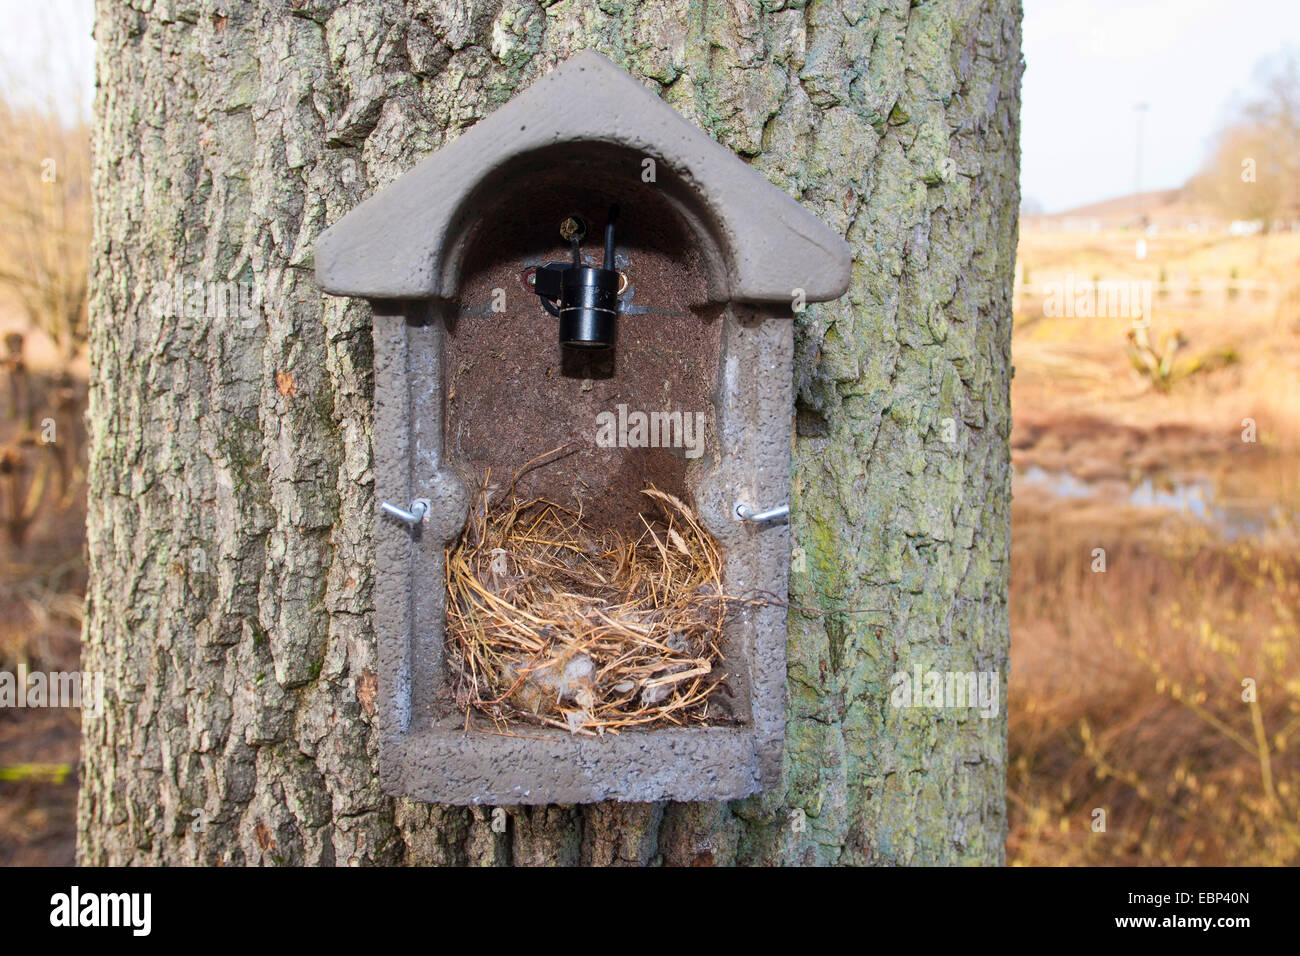 Casella di uccelli, scatola di nido con la telecamera nella casella di nesting che è in grado di trasferire le immagini ciò che sta accadendo a una schermata, Germania Foto Stock